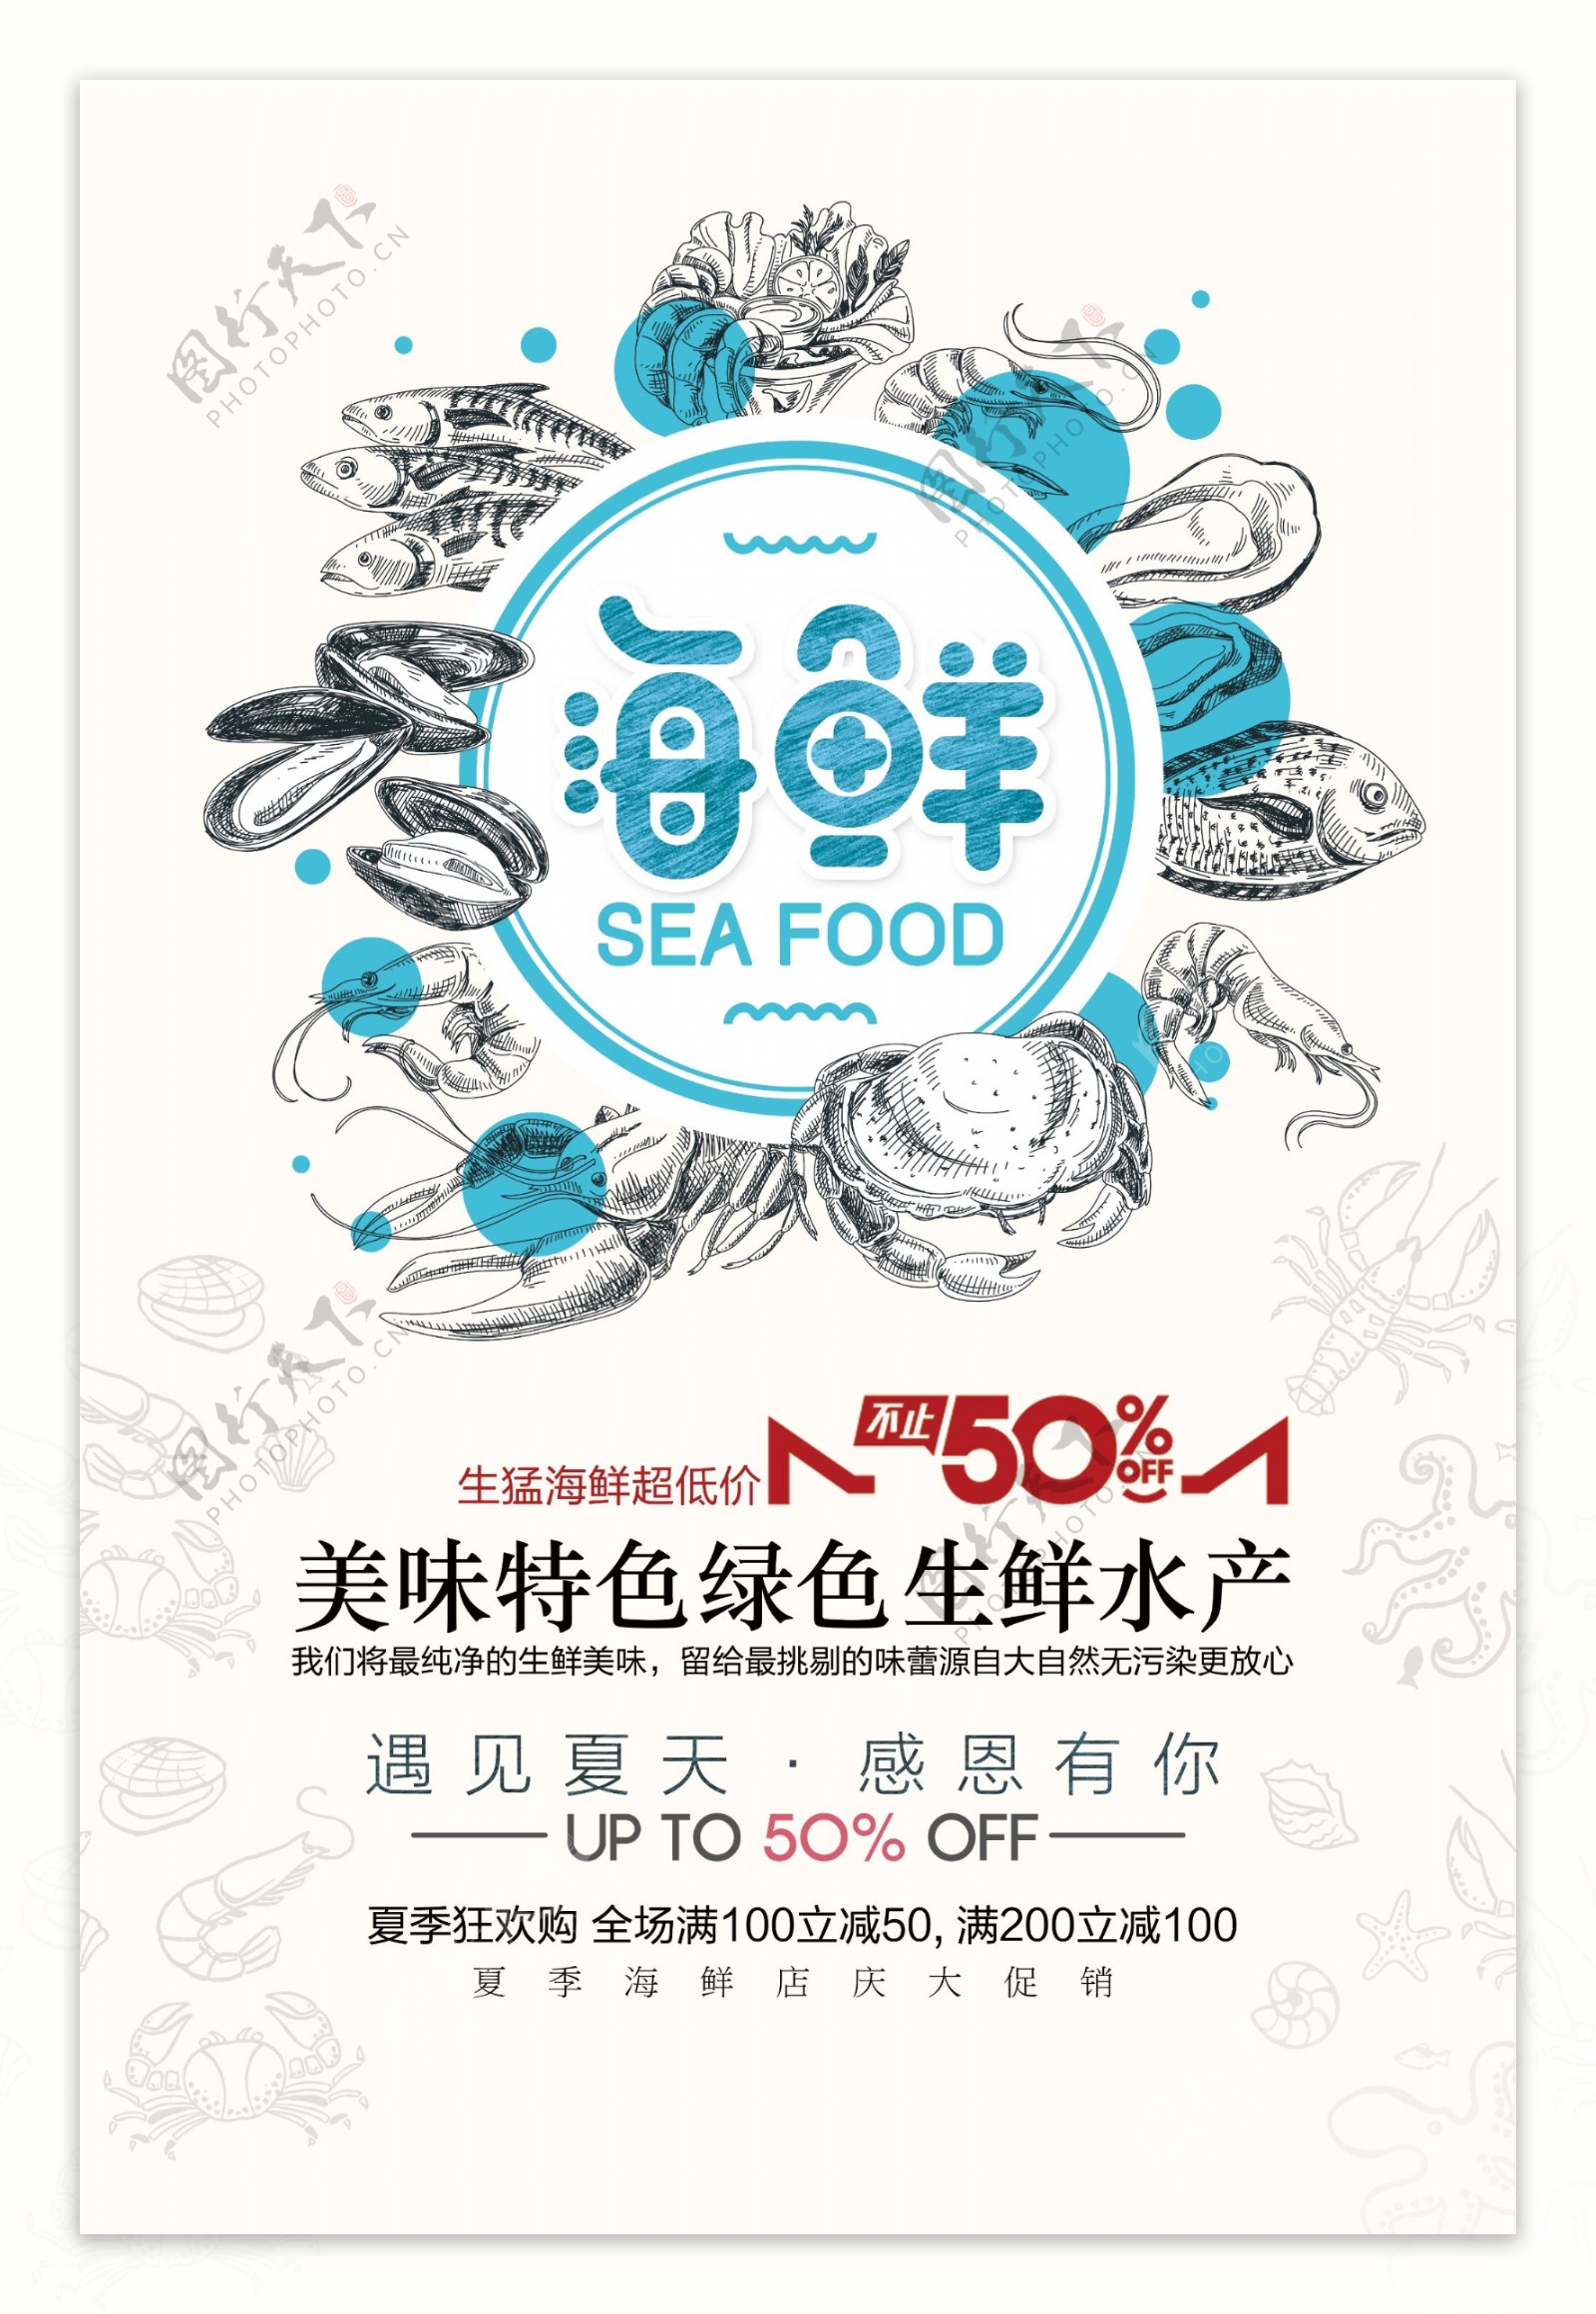 海鲜美食促销活动宣传海报